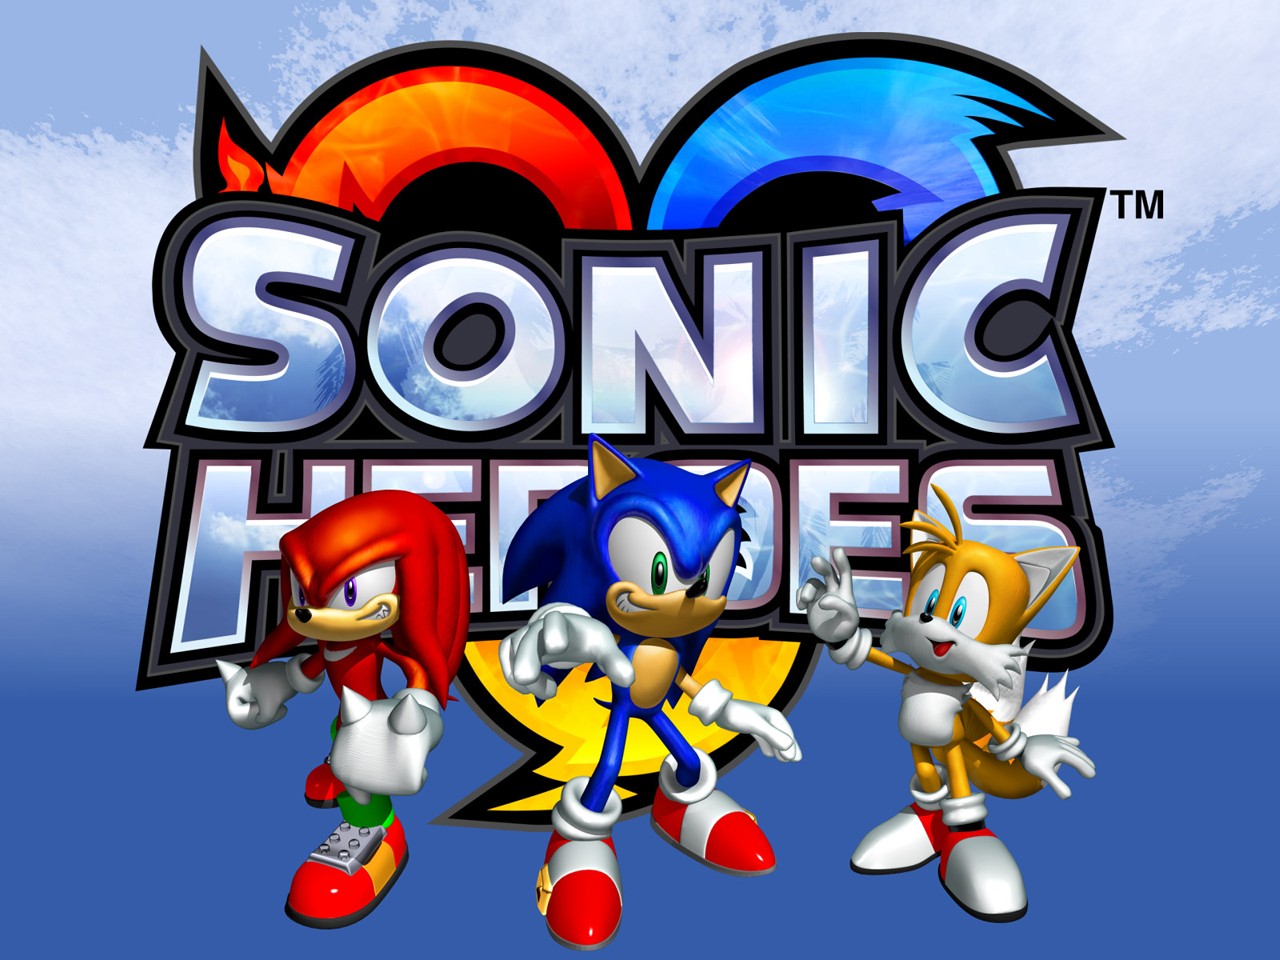 "Sonic Heroes" desktop wallpaper 3 (1280 x 960 pixels)